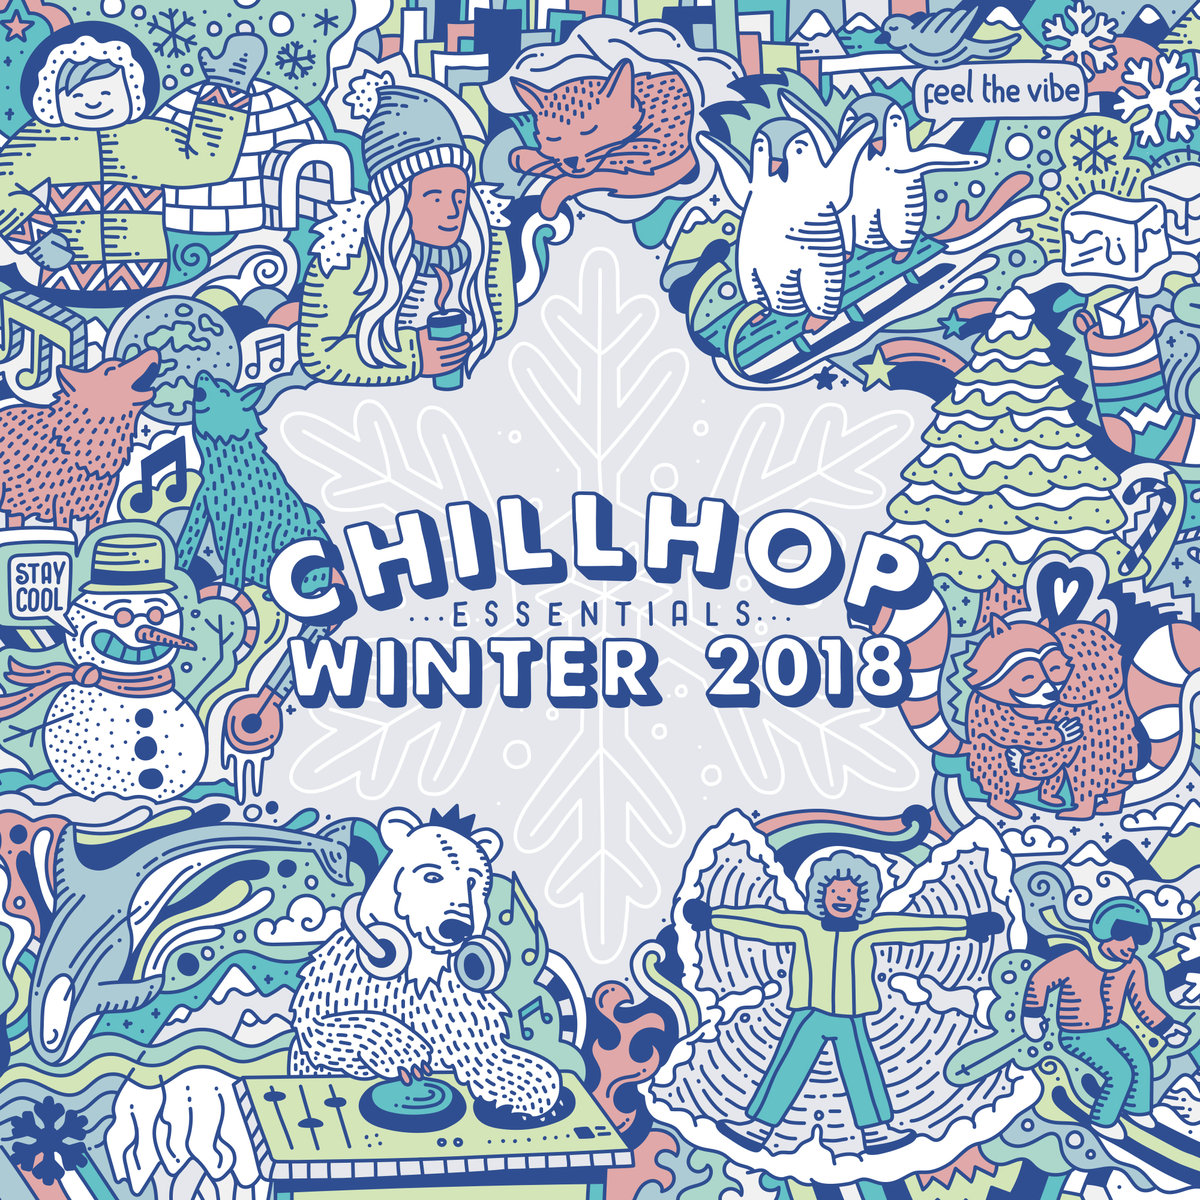 Chillhop_essentials_-_winter_2018